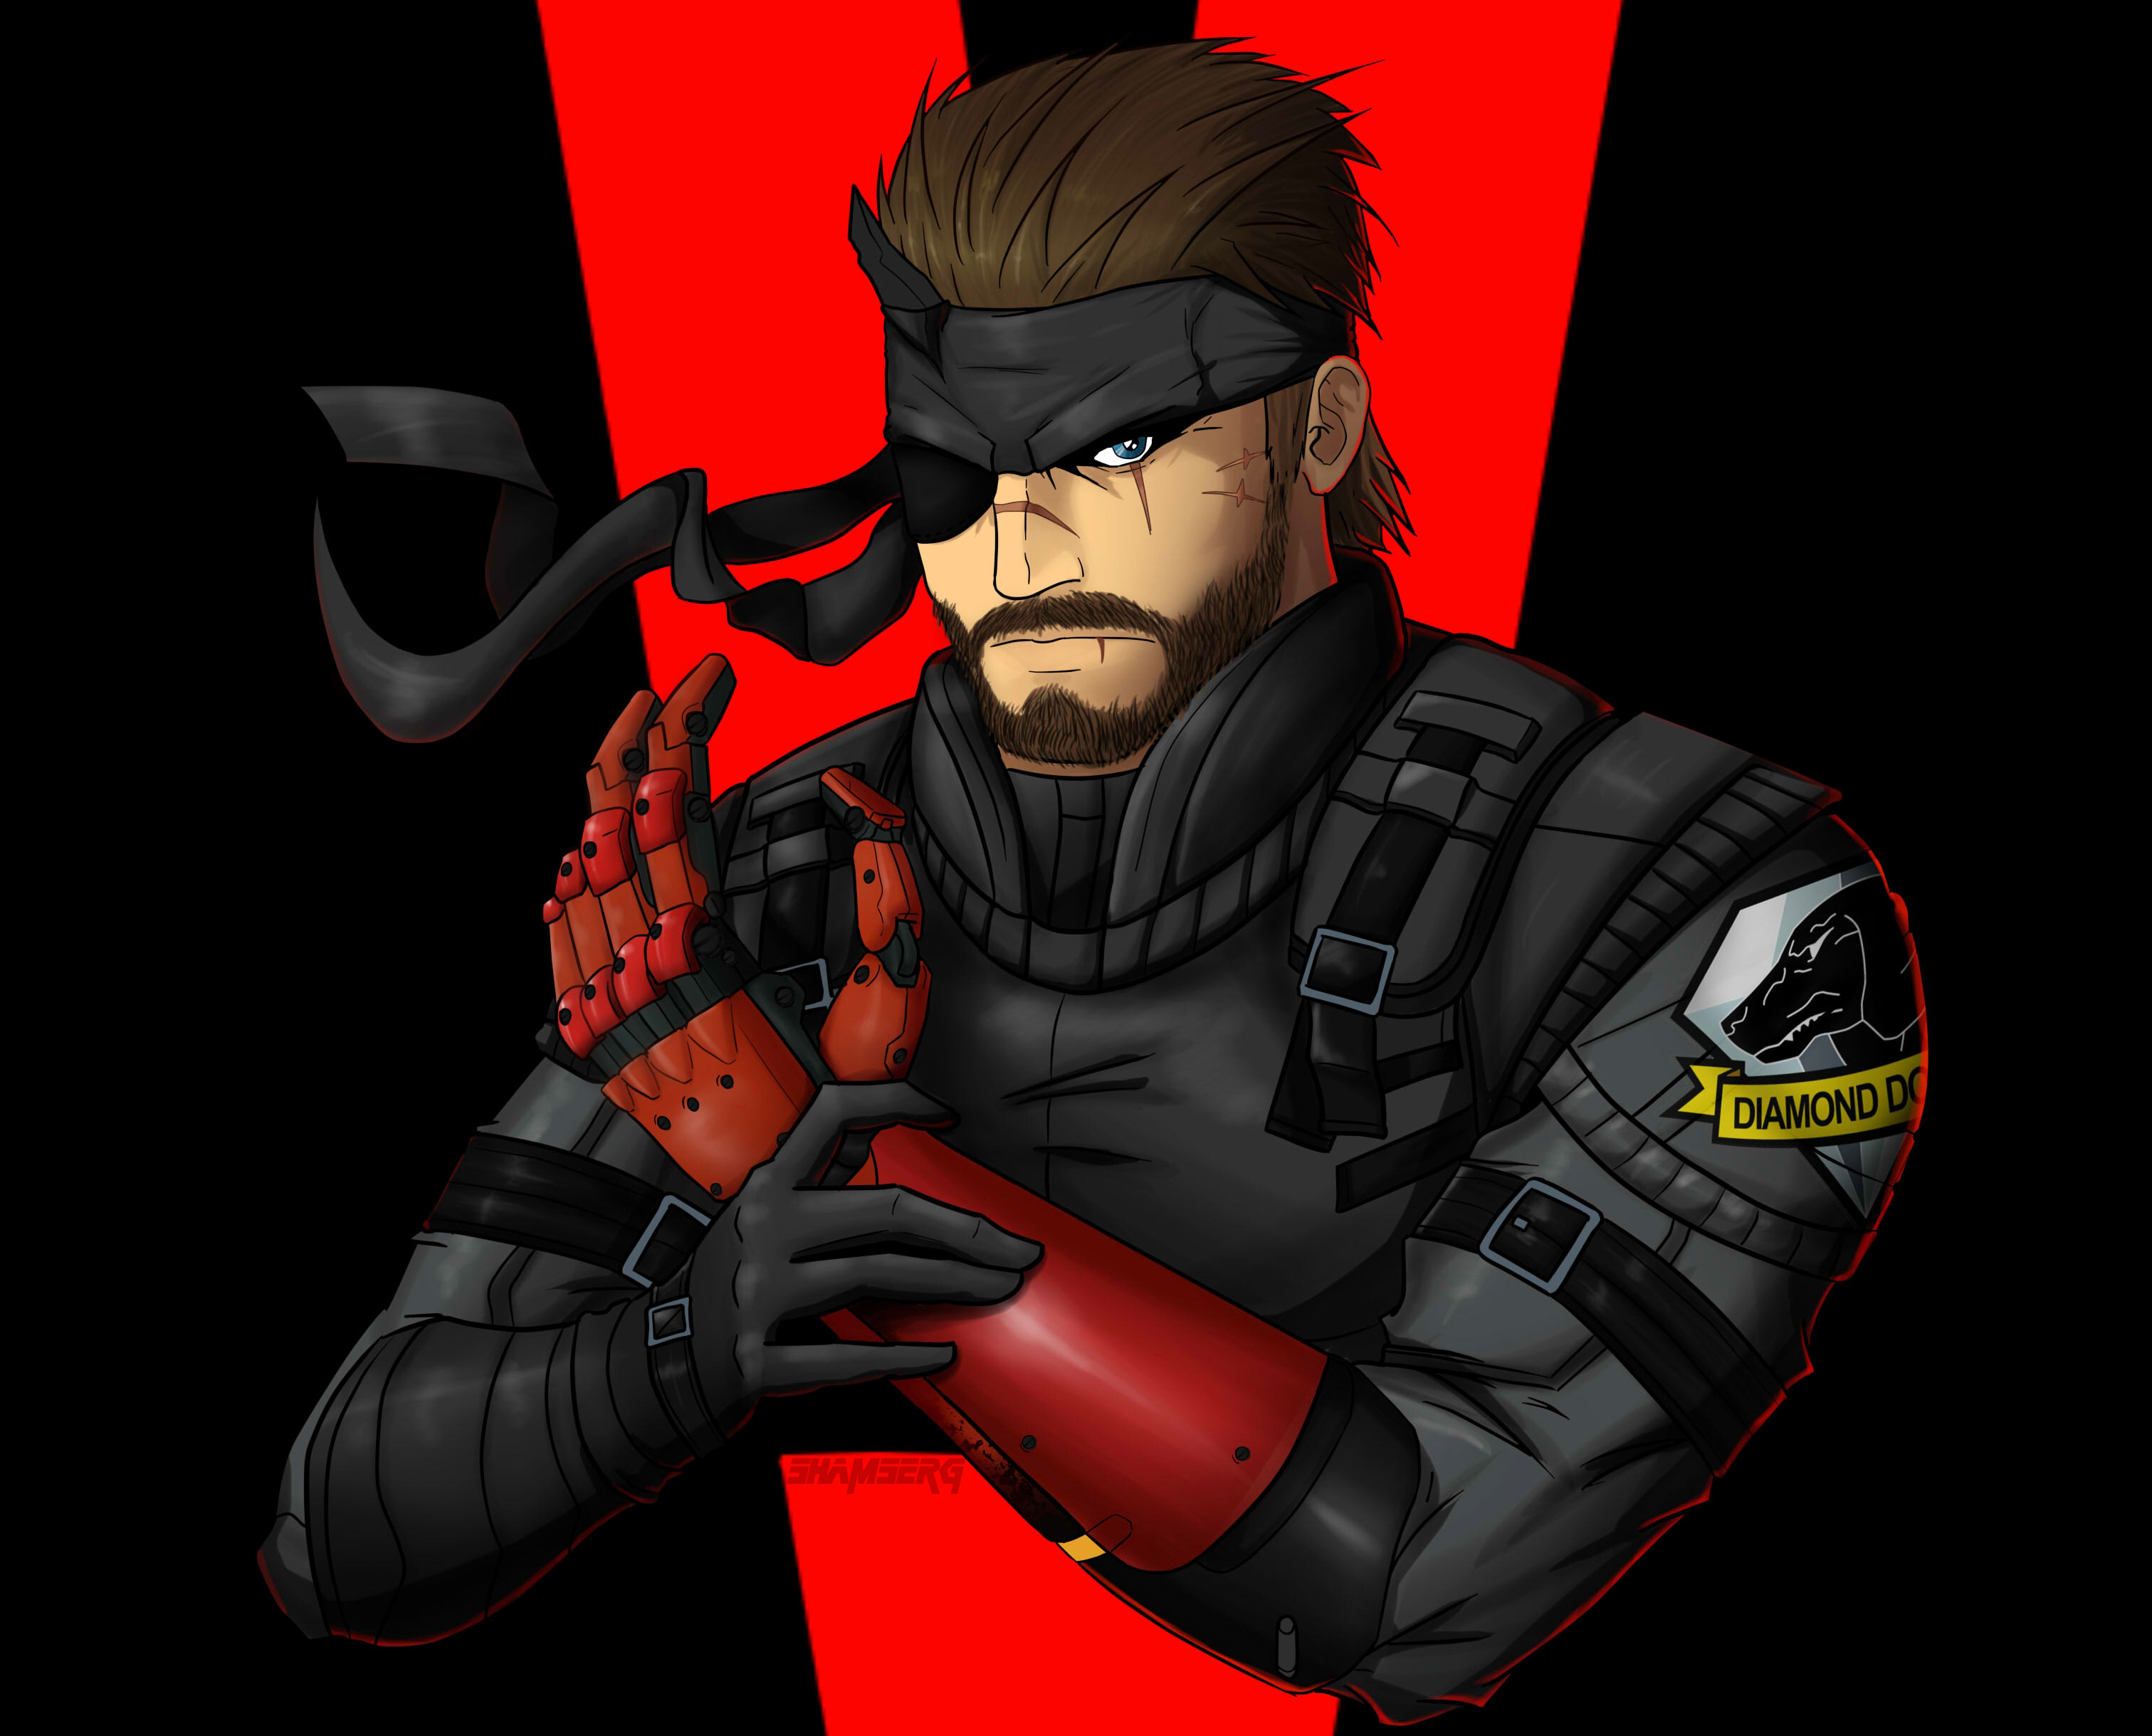 47+] Metal Gear Solid V: The Phantom Pain HD Wallpapers - Wallpaper ... -  WallpaperSafari